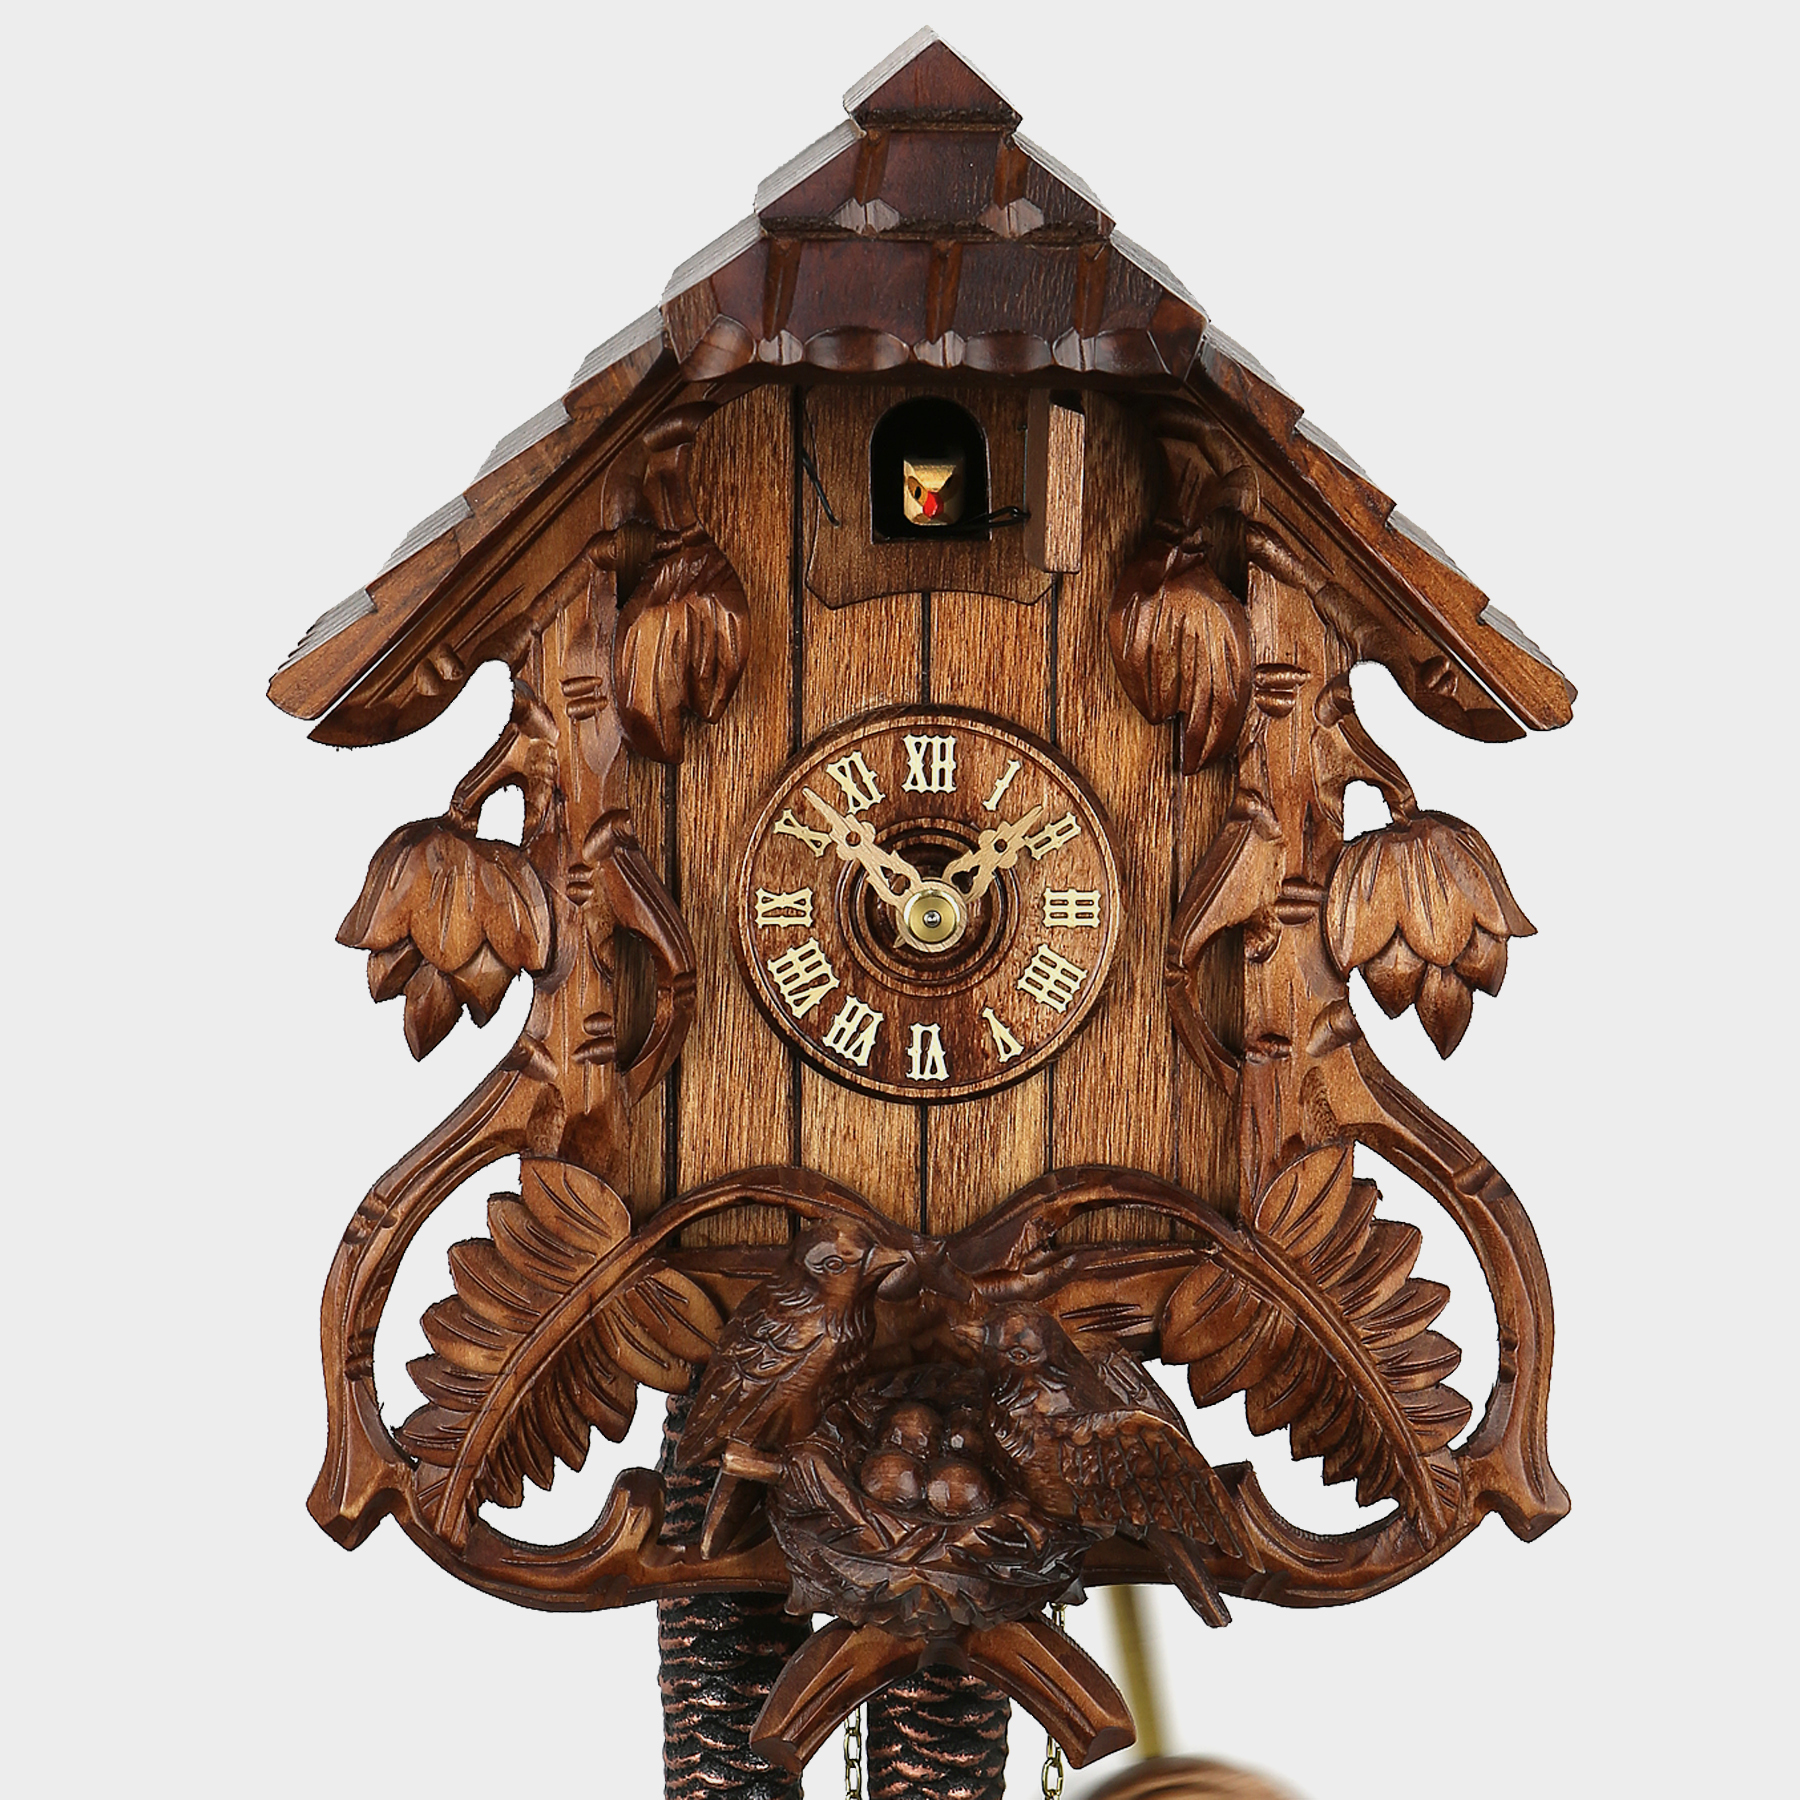 Haus Der 1000 Uhren Kuckucksuhren Black Forest Cuckoo Clocks Triberg